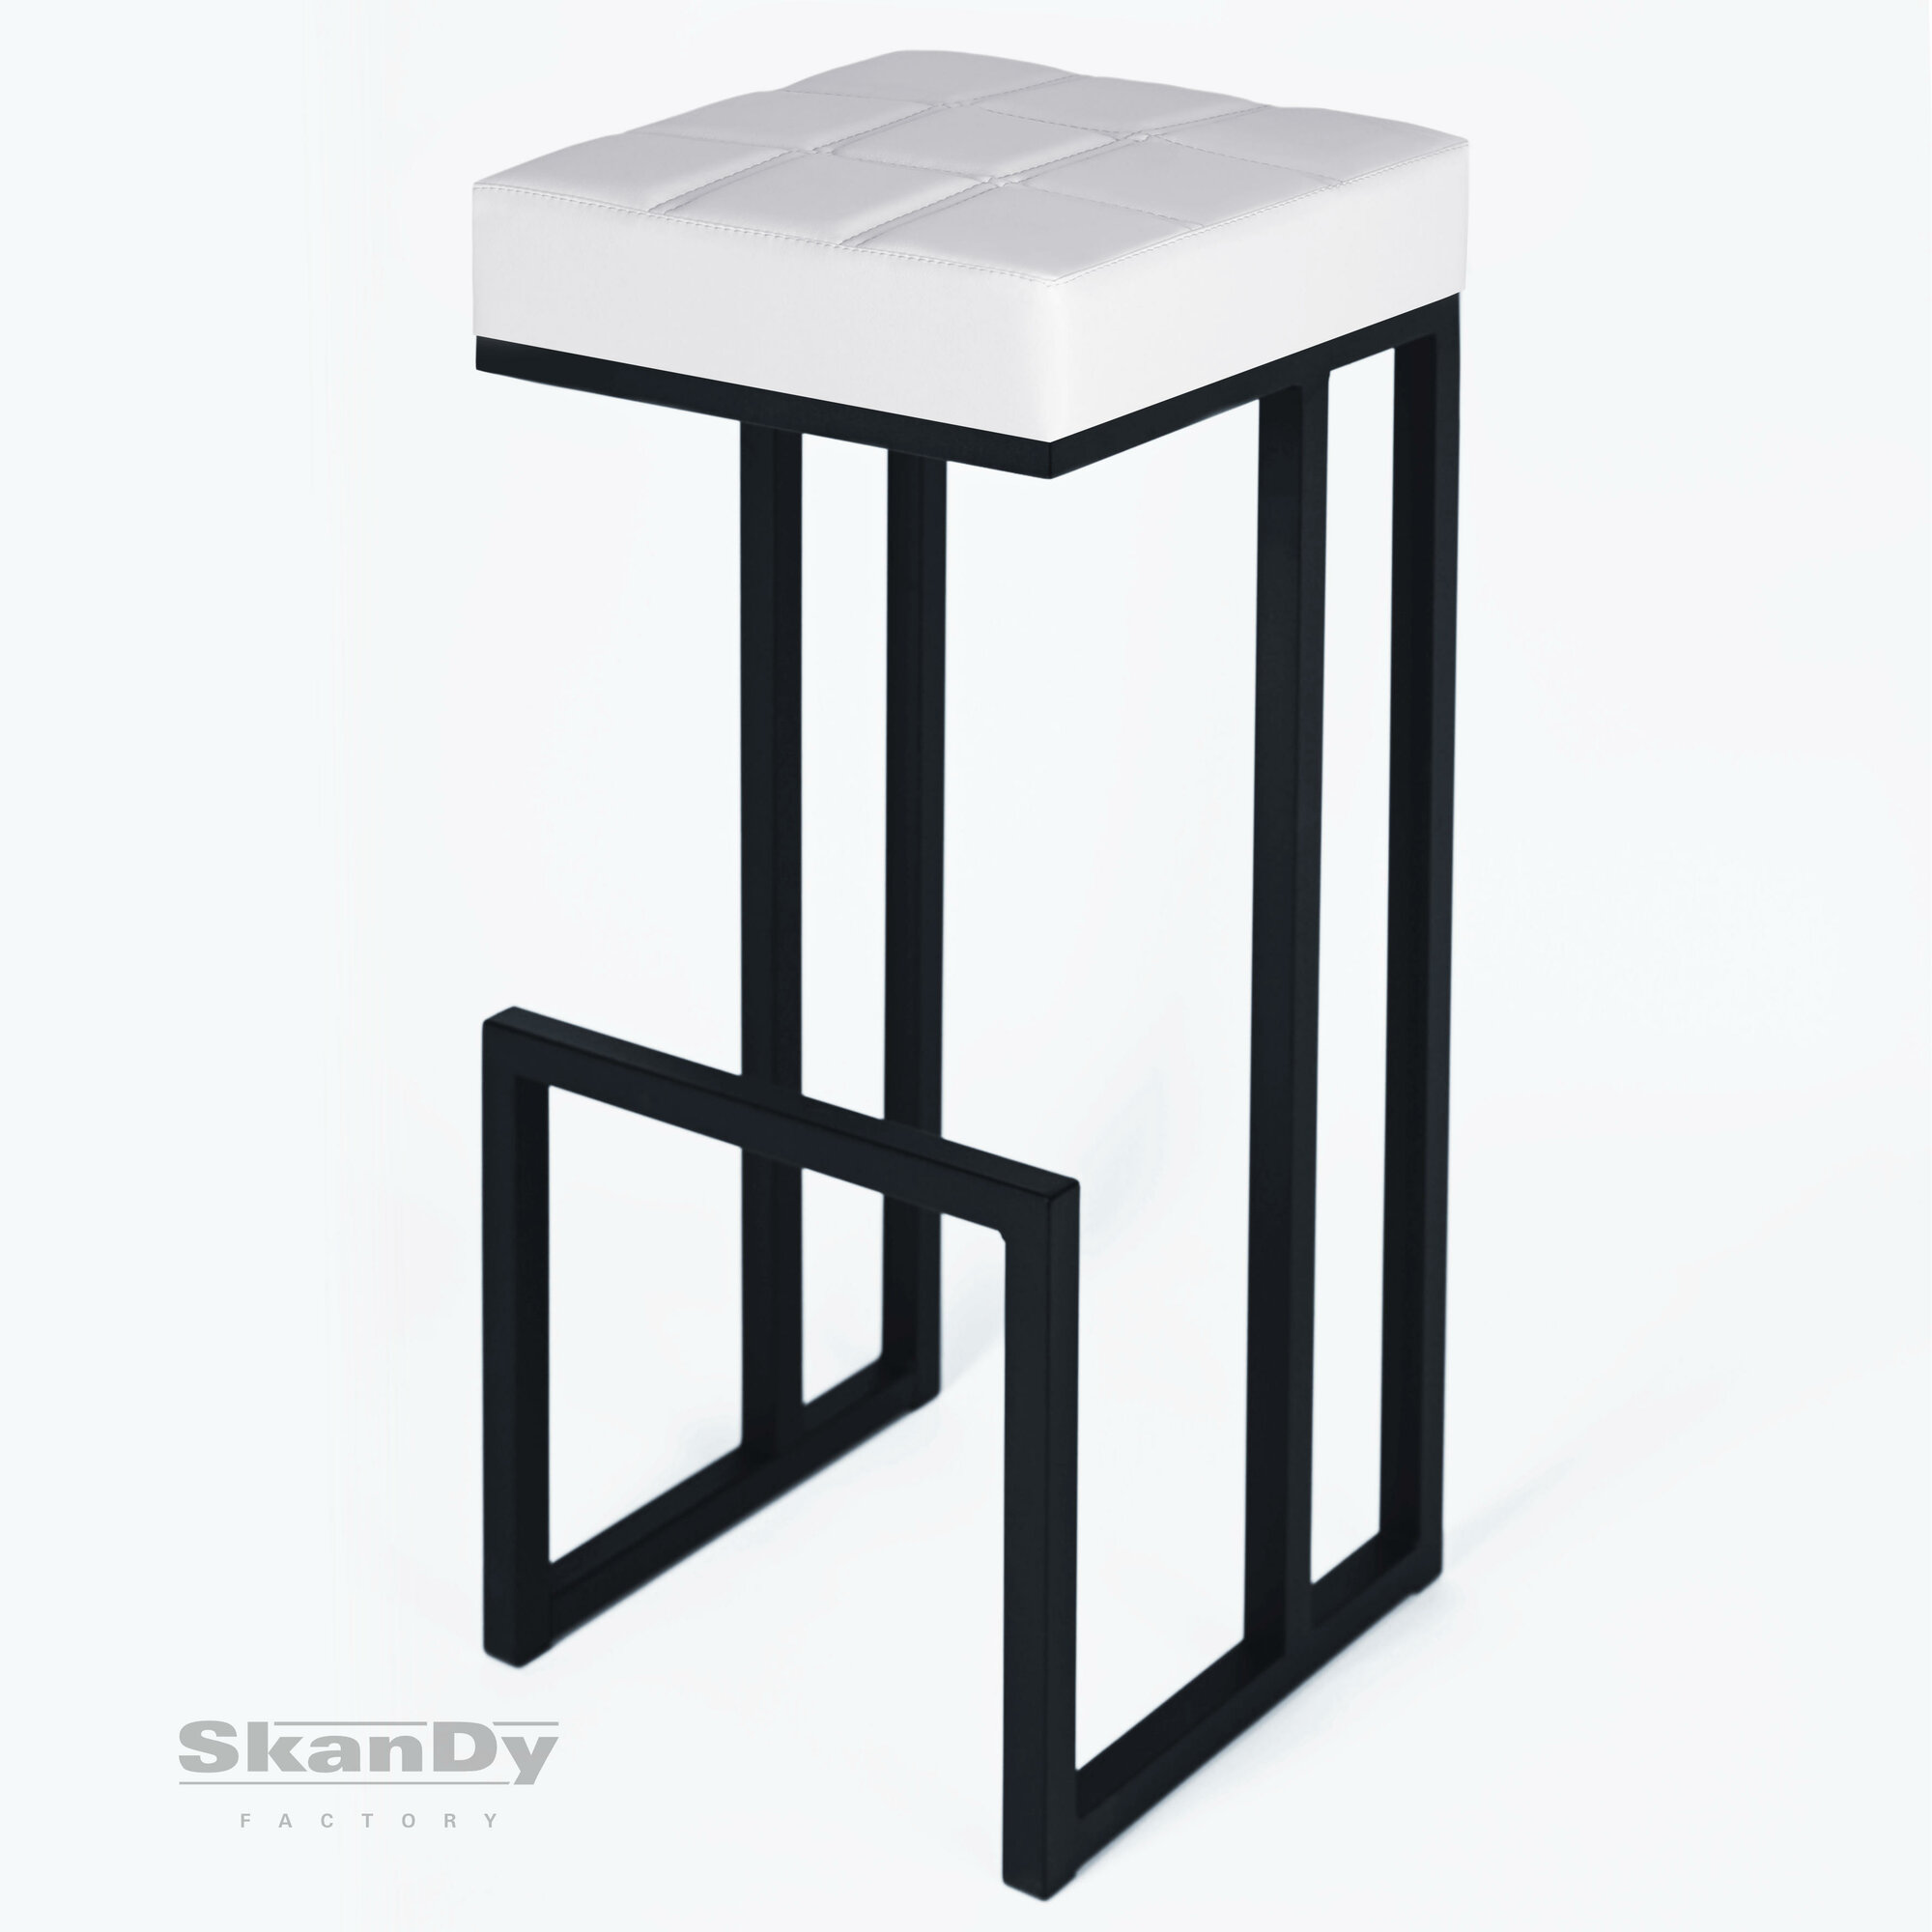 Барный стул для кухни мягкий SkanDy Factory 81 см белый